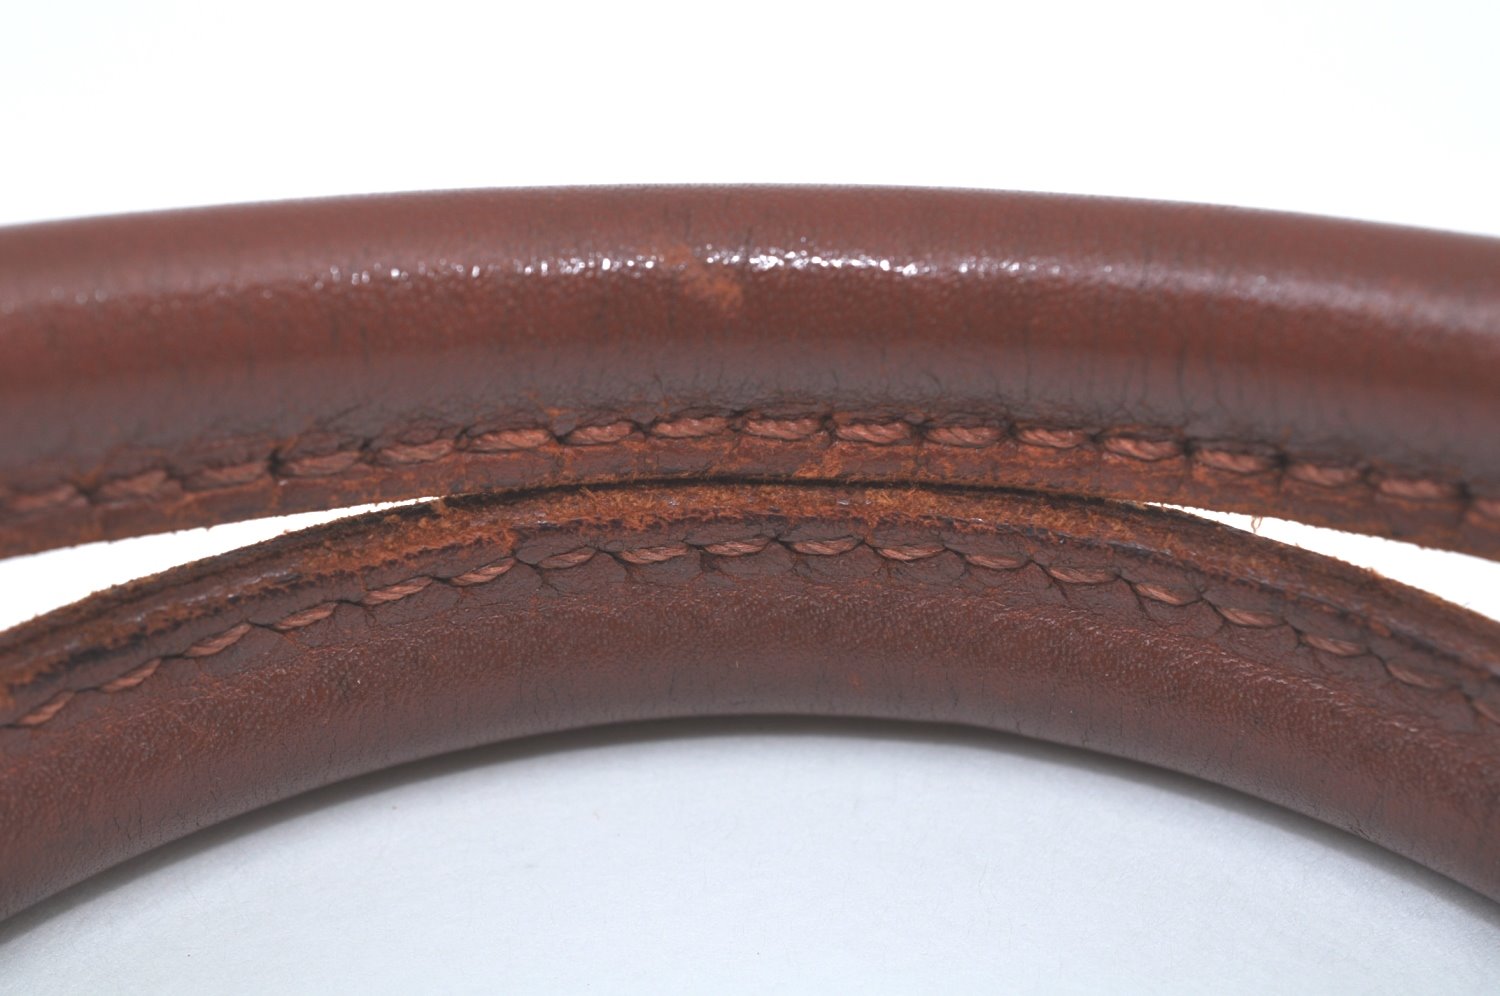 Authentic MCM Visetos Leather Vintage Shoulder Hand Bag Brown K9648